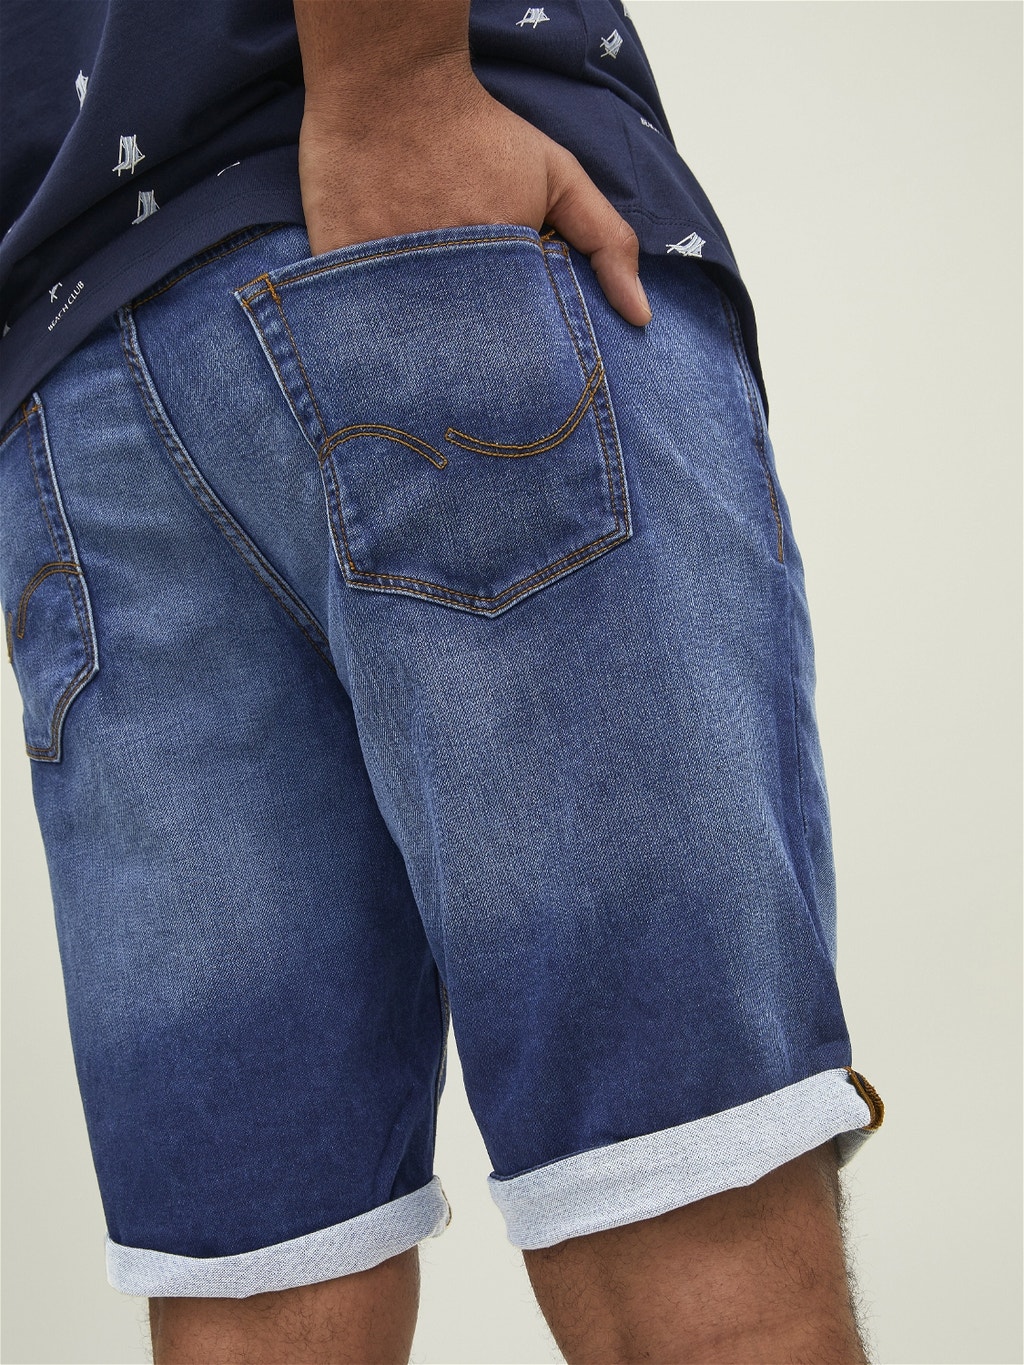 Rick Icon 835 Jeans cortos en tallas grandes con 20% de descuento | Jack & Jones®